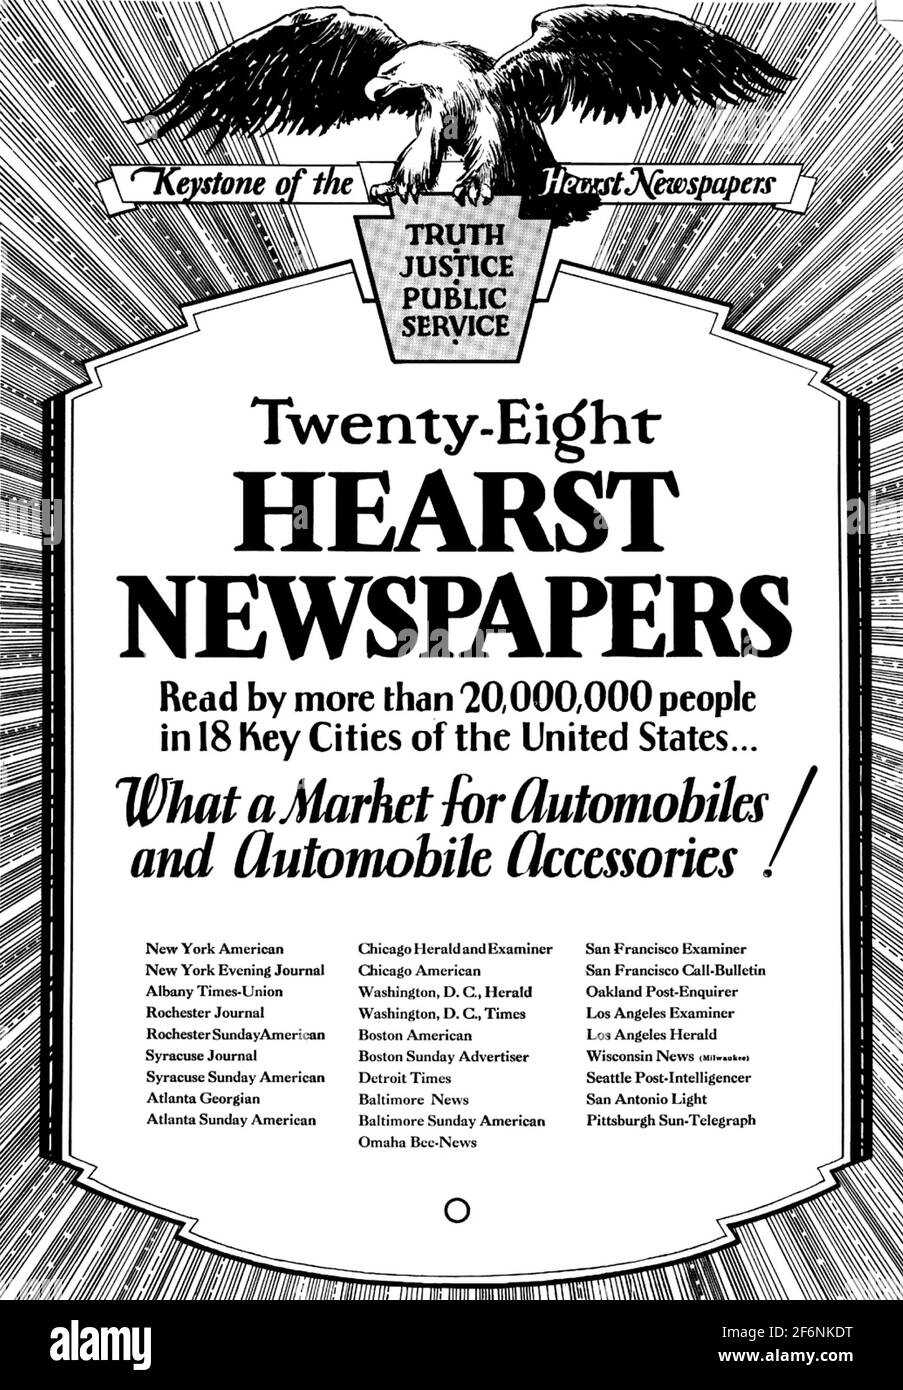 WILLIAM RANDOLPH HEARST (1863-1951) amerikanischer Medienmogul. Ein Werbespot über 1930, der seine zahlreichen Zeitungsbestände bewirbt. Stockfoto